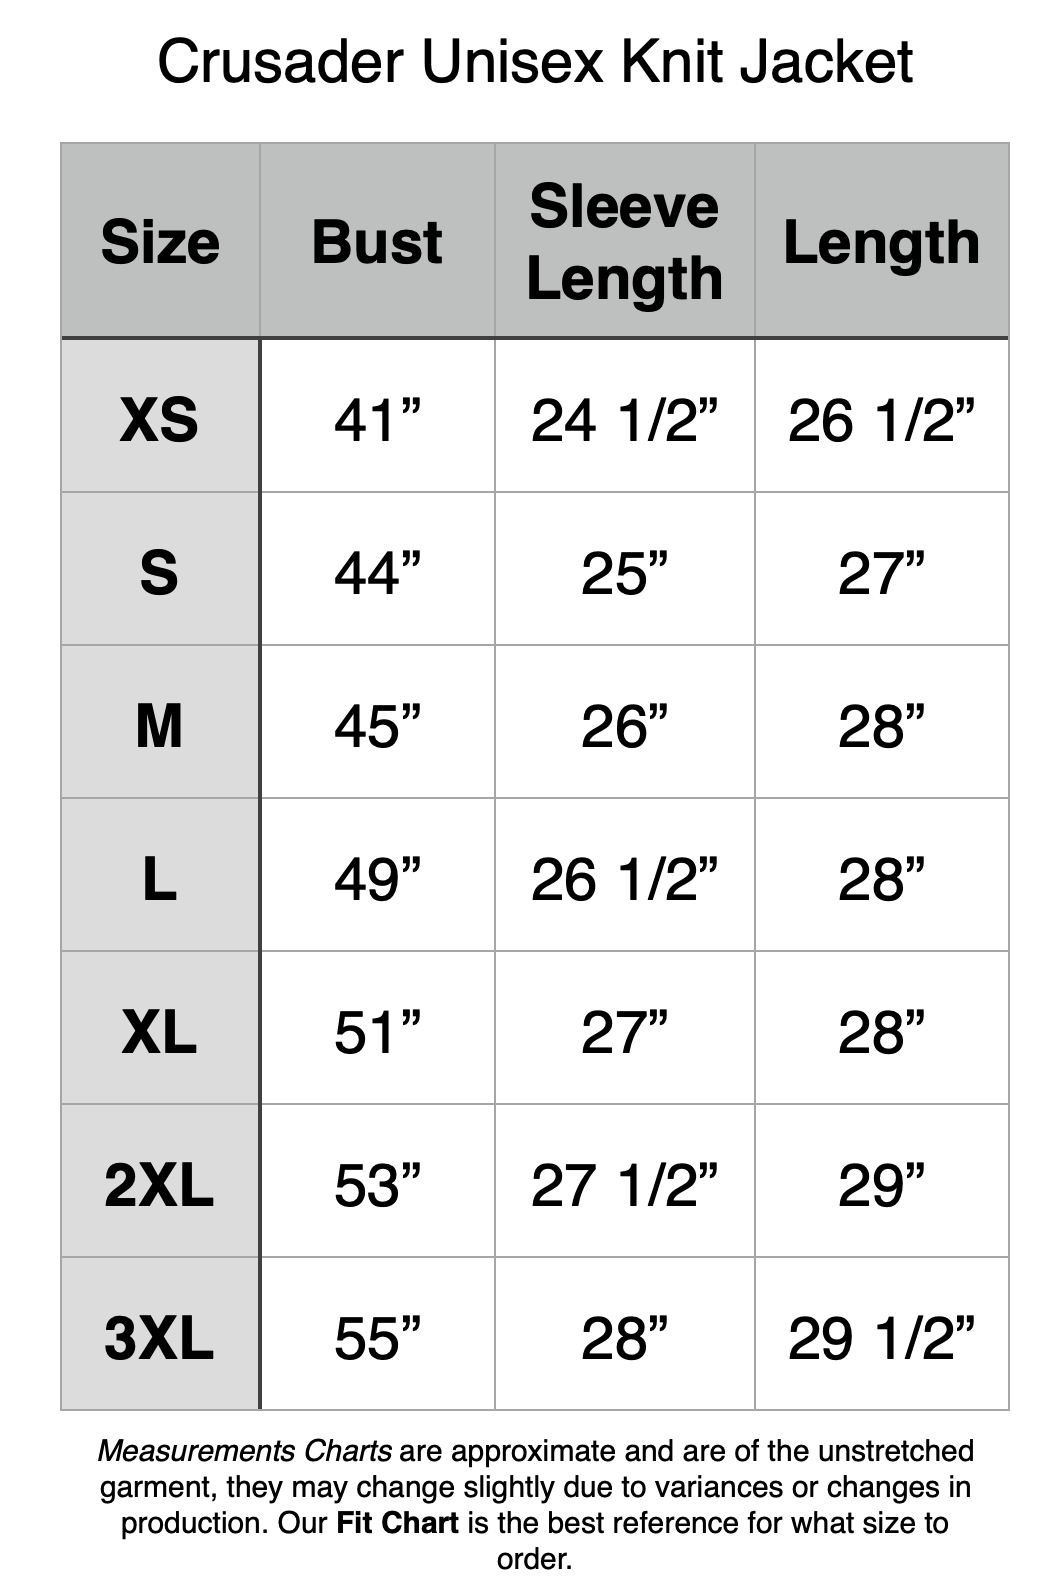 Crusader Unisex Knit Jacket: XS - 41" Bust, 24.5" Sleeve Length, 26.5" Length. S - 44" Bust, 25" Sleeve Length, 27" Length. M - 45" Bust, 26" Sleeve Length, 28" Length. L - 49" Bust, 26.5" Sleeve Length, 28" Length. XL - 51" Bust, 27" Sleeve Length, 28" Length. 2XL - 53" Bust, 27.5" Sleeve Length, 29" Length. 3XL - 55" Bust, 28" Sleeve Length, 29.5" Length.